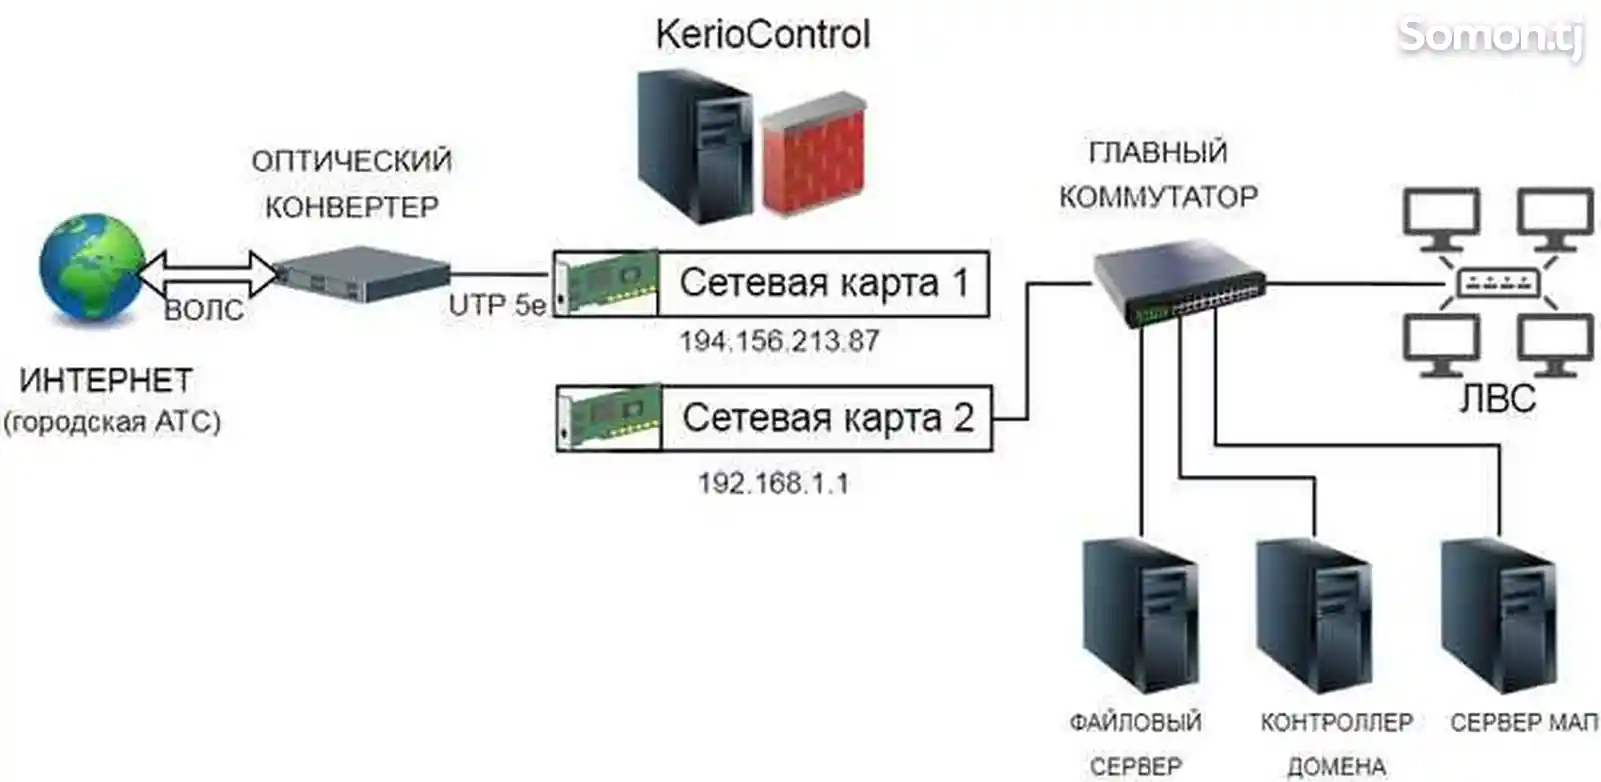 Установка Kerio Control-3